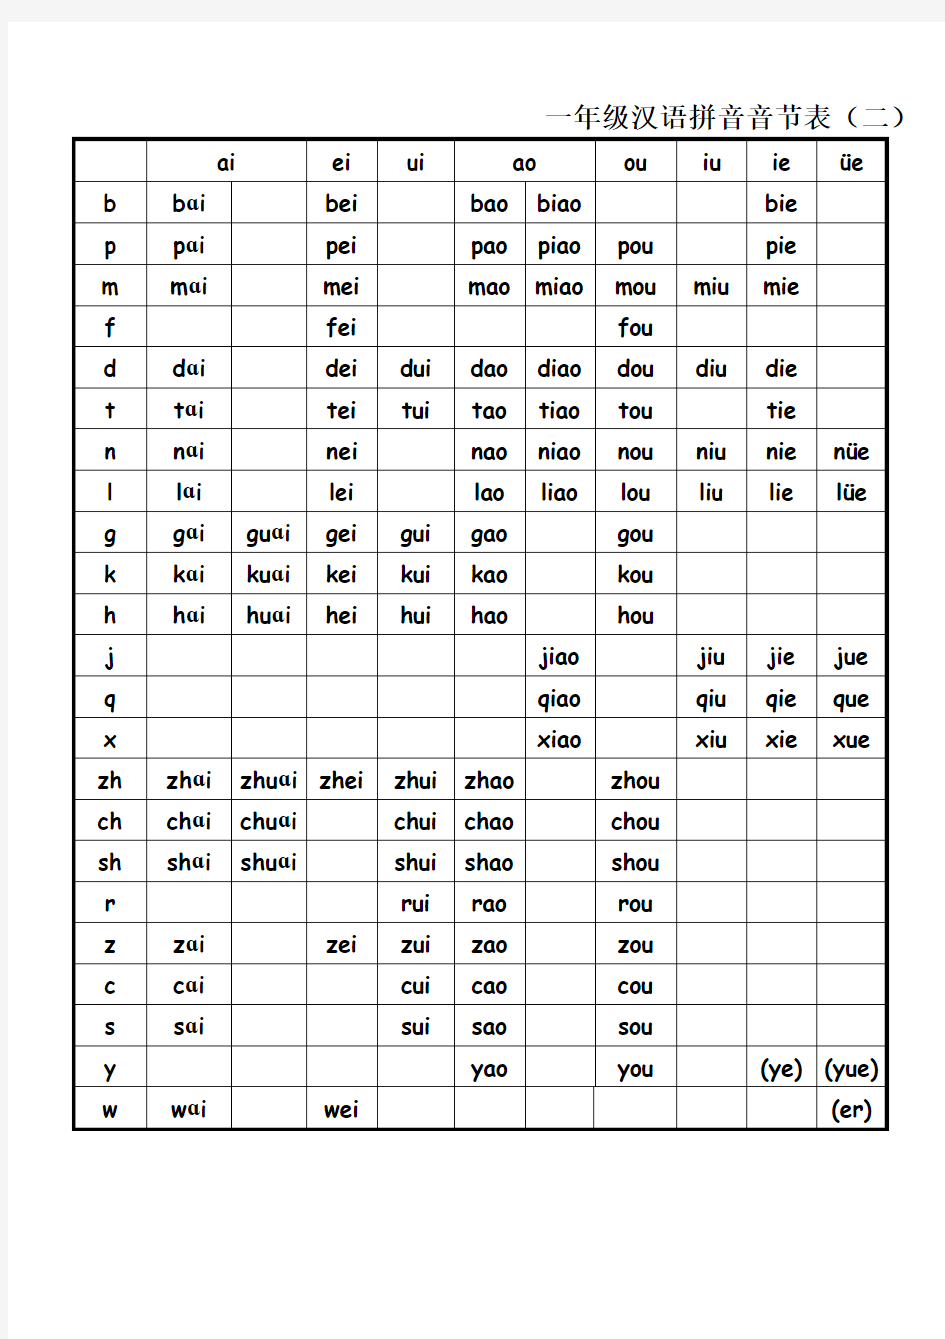 一年级汉语拼音音节表完全版